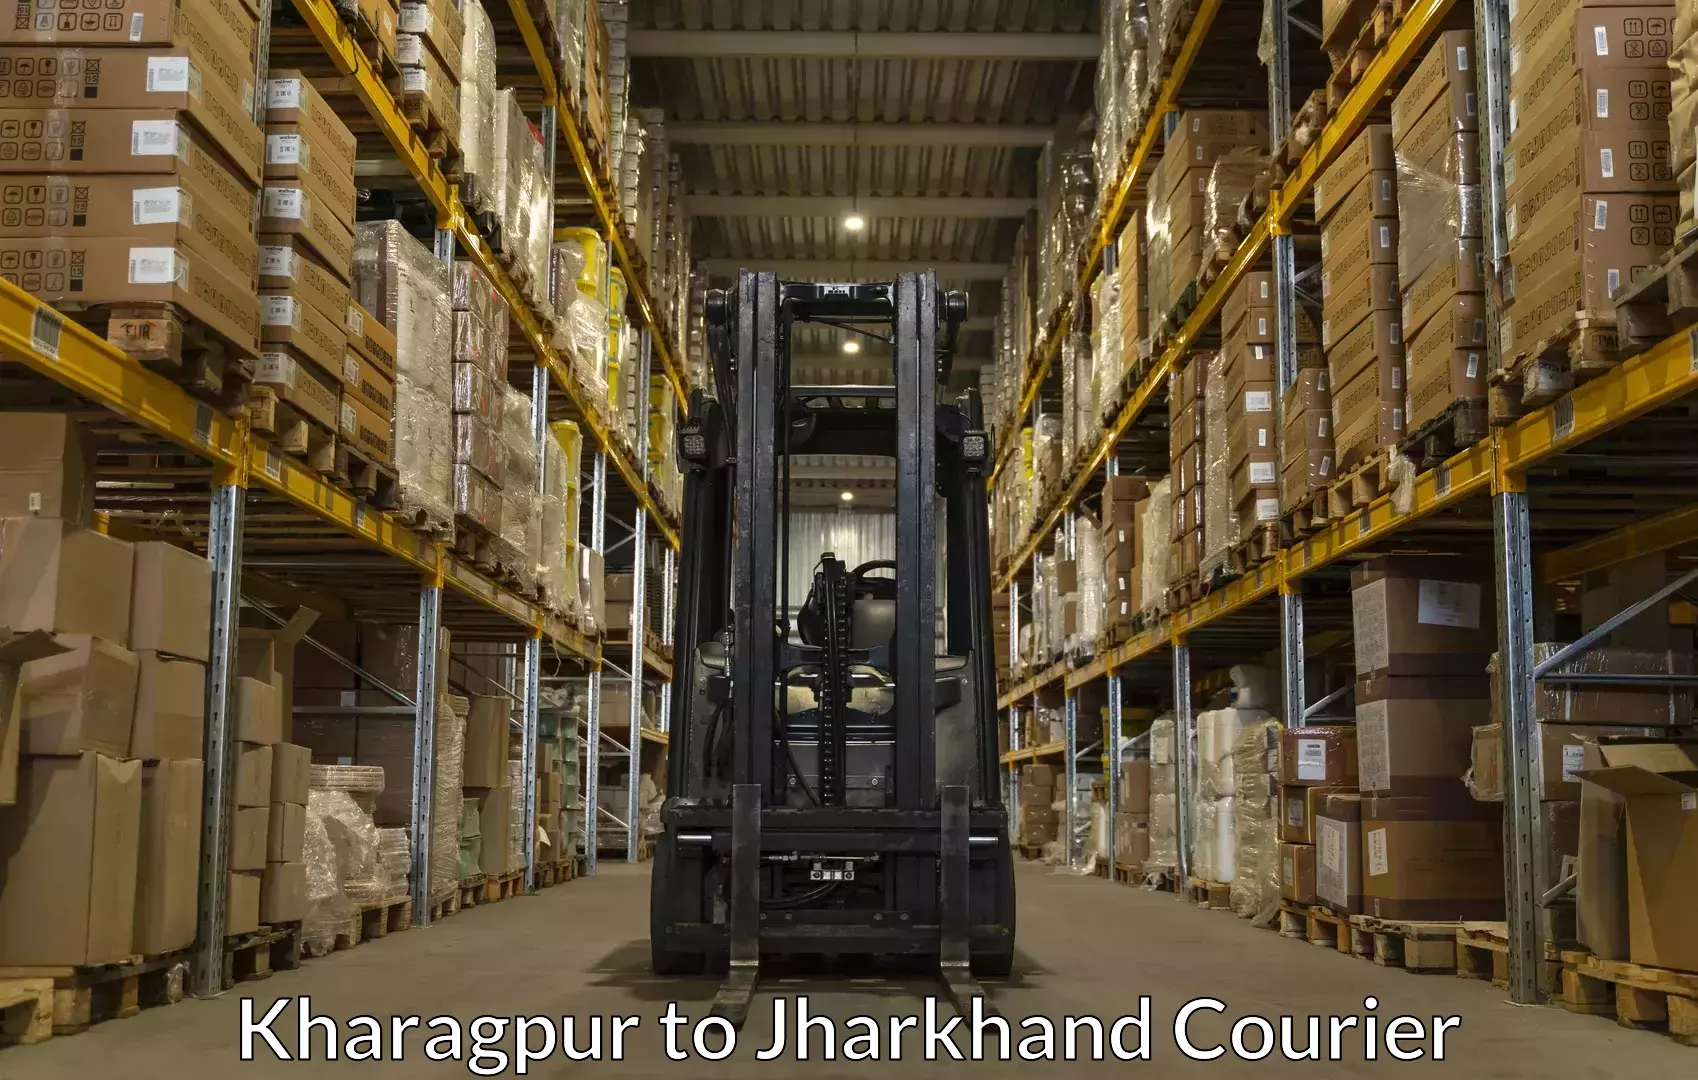 Baggage transport coordination Kharagpur to Godabar Chatra